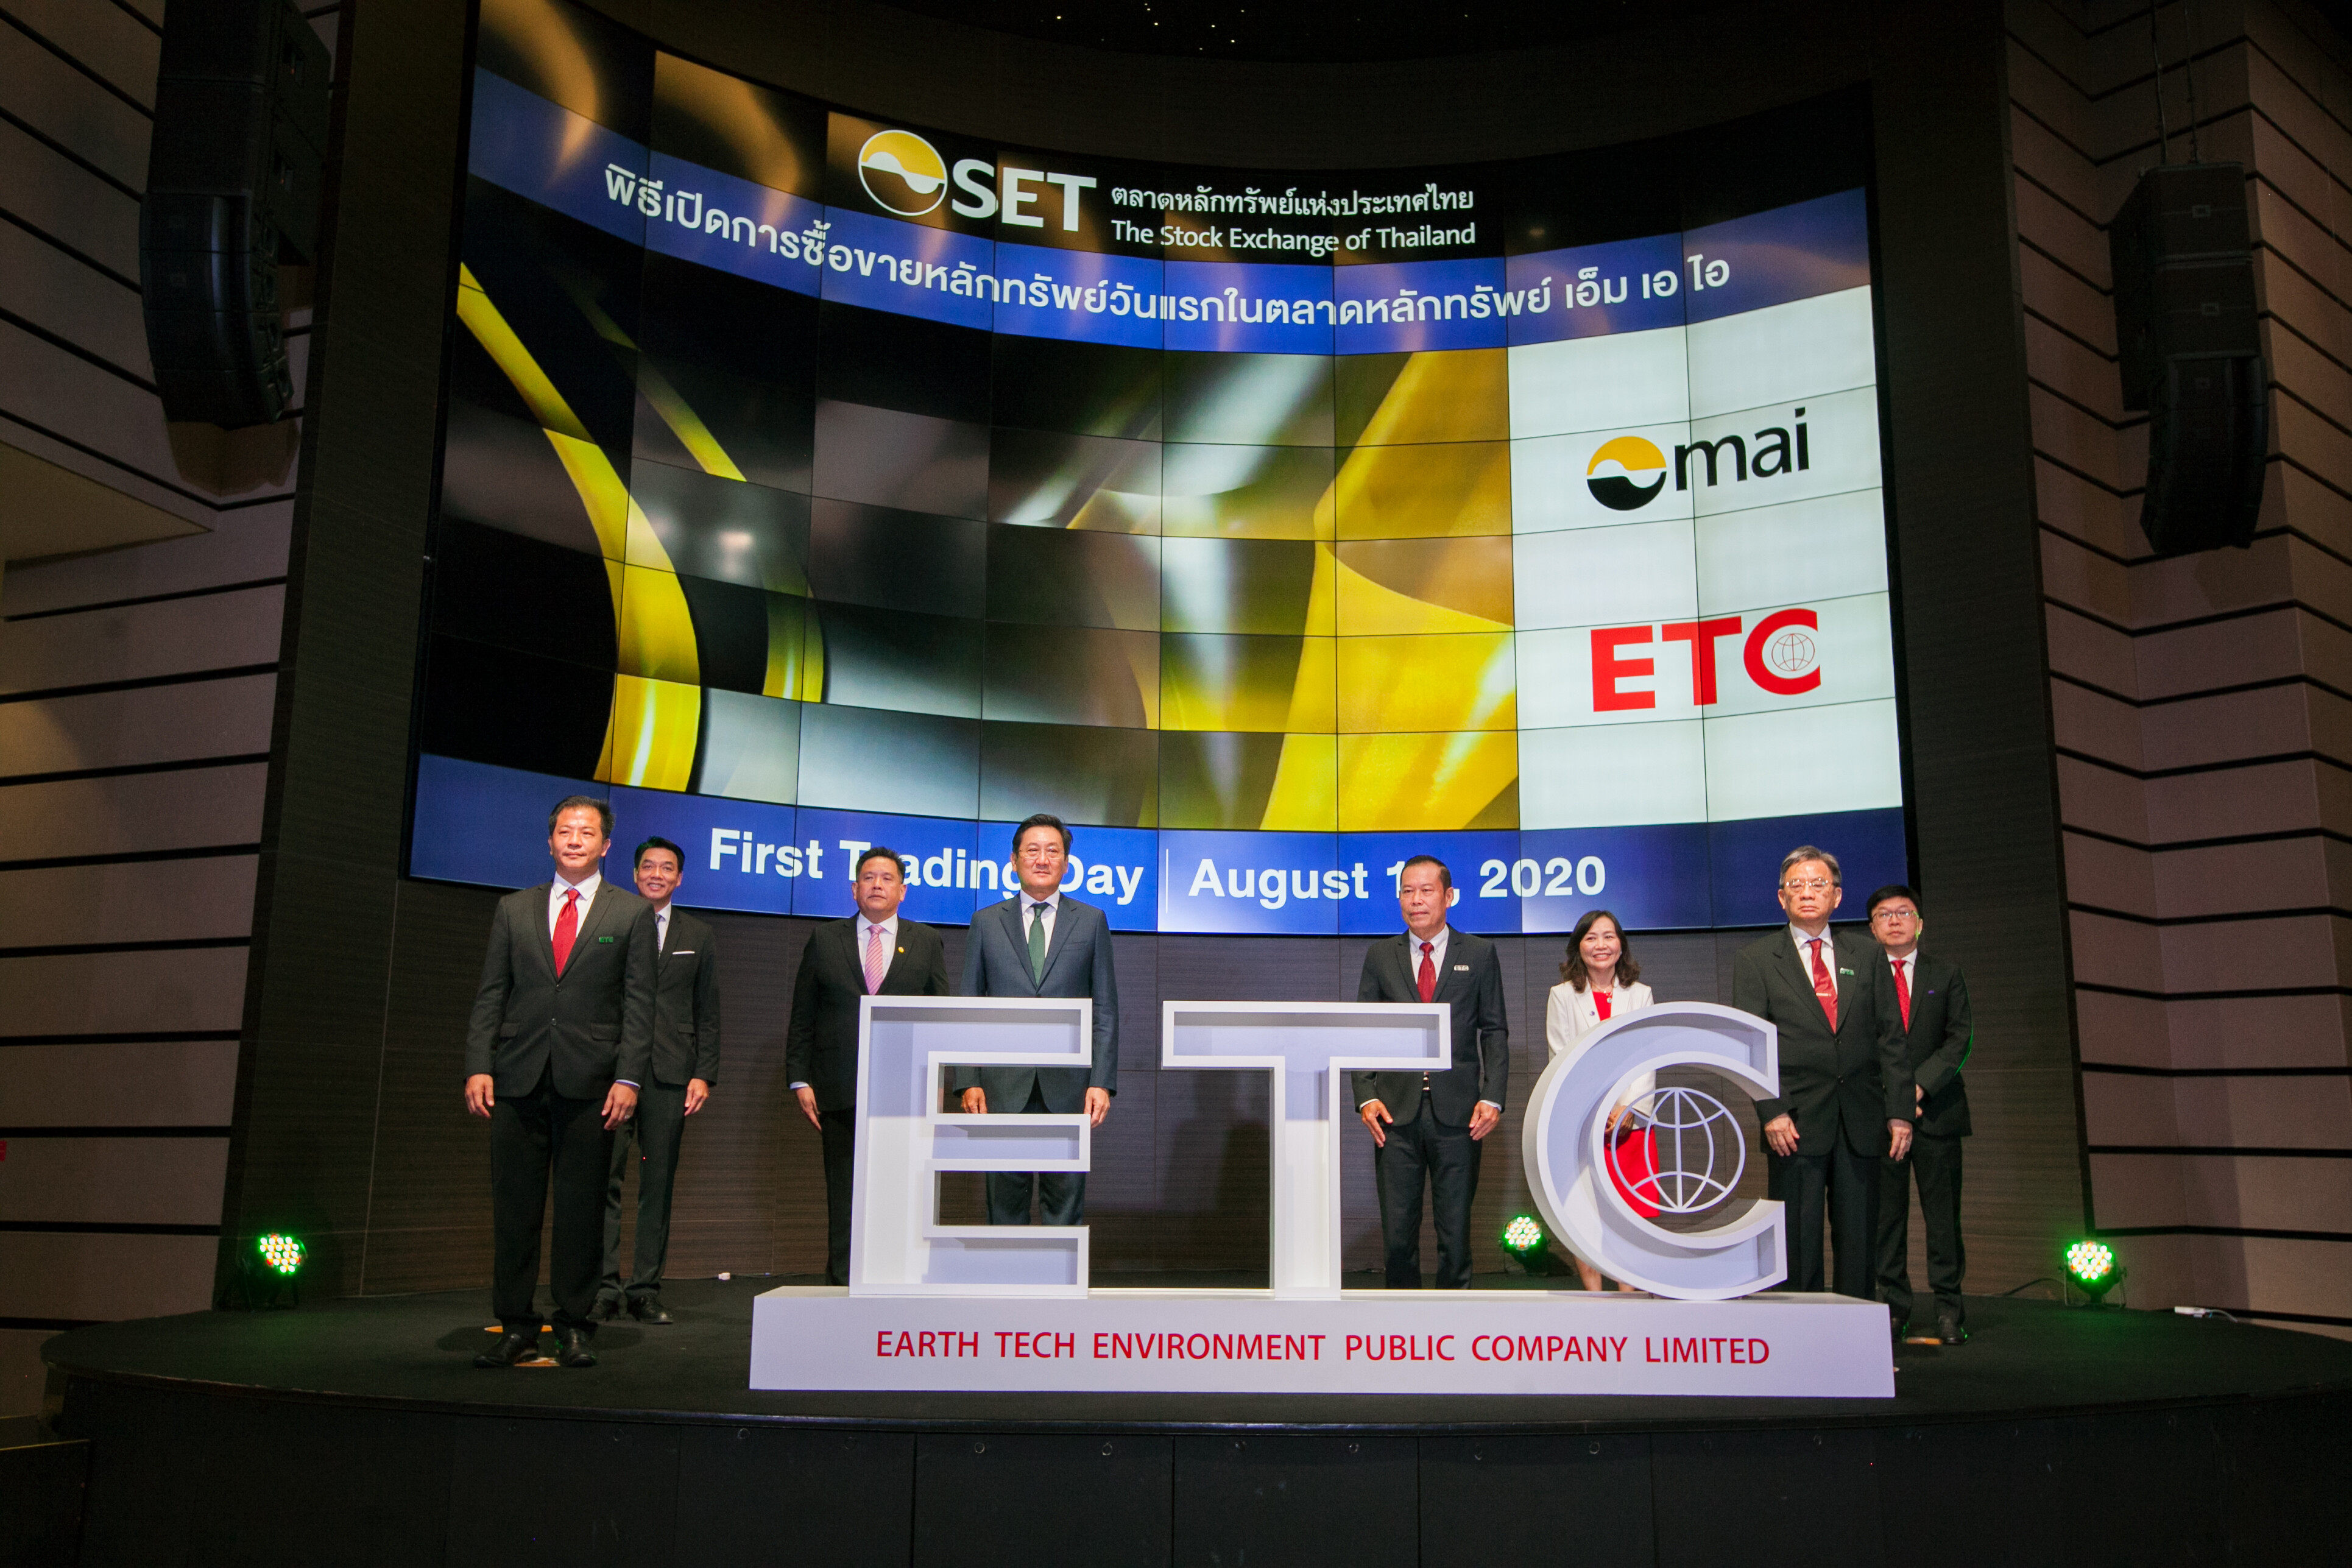 ETC เข้าเทรดวันแรก 4 บาท ราคาหุ้นพุ่ง 54% โชว์ศักยภาพผู้นำโรงไฟฟ้าขยะอุตสาหกรรมครบวงจรแห่งแรกในประเทศไทย